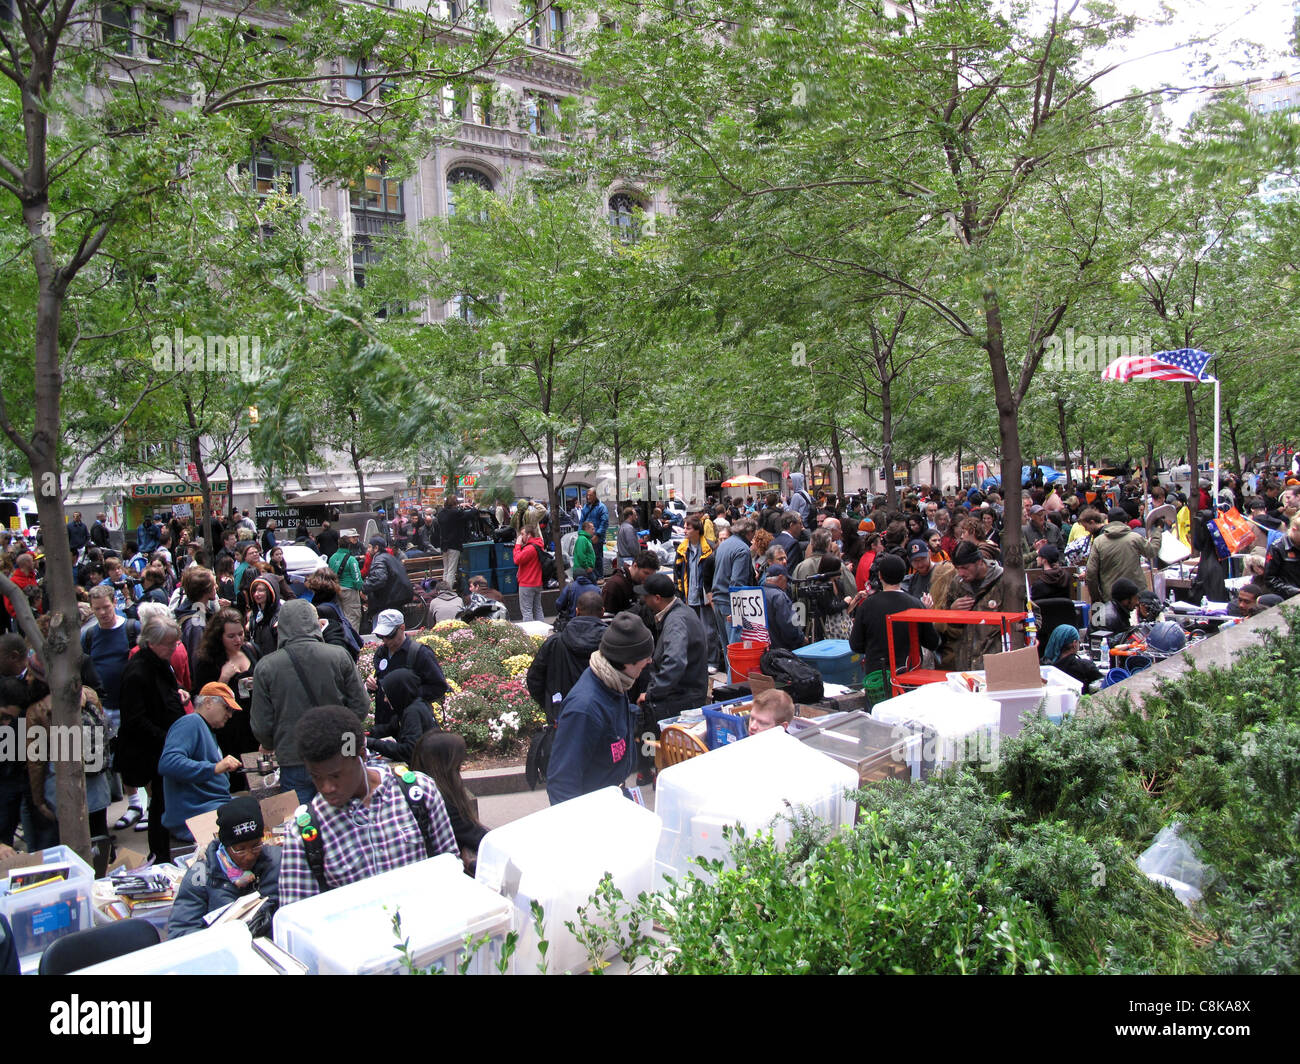 Occupy Wall Street at Zuccotti Park in New York City, NY Stock Photo